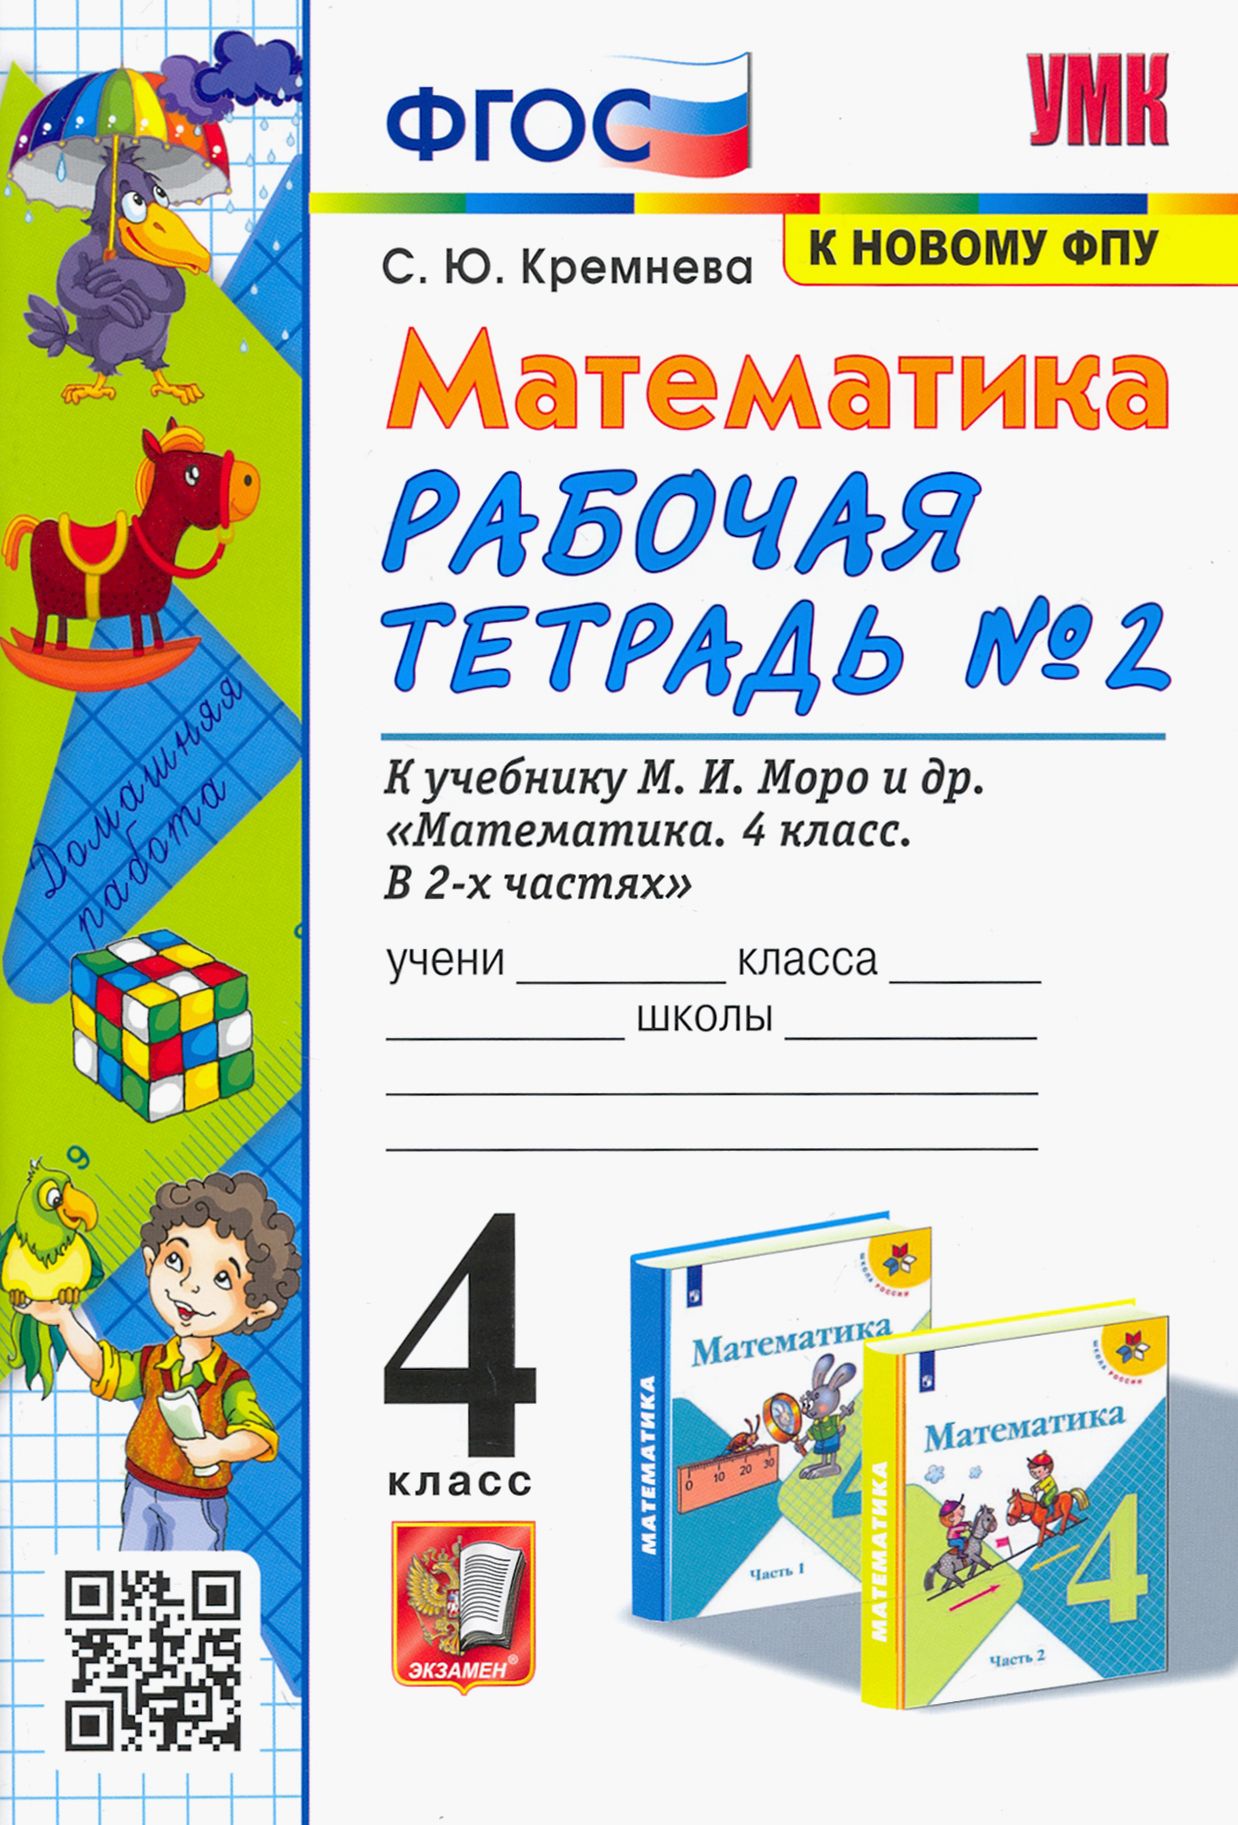 Математика. 4 класс: Рабочая тетрадь № 2 к учебнику Моро М.И. (к новому ФПУ) (ФГОС)